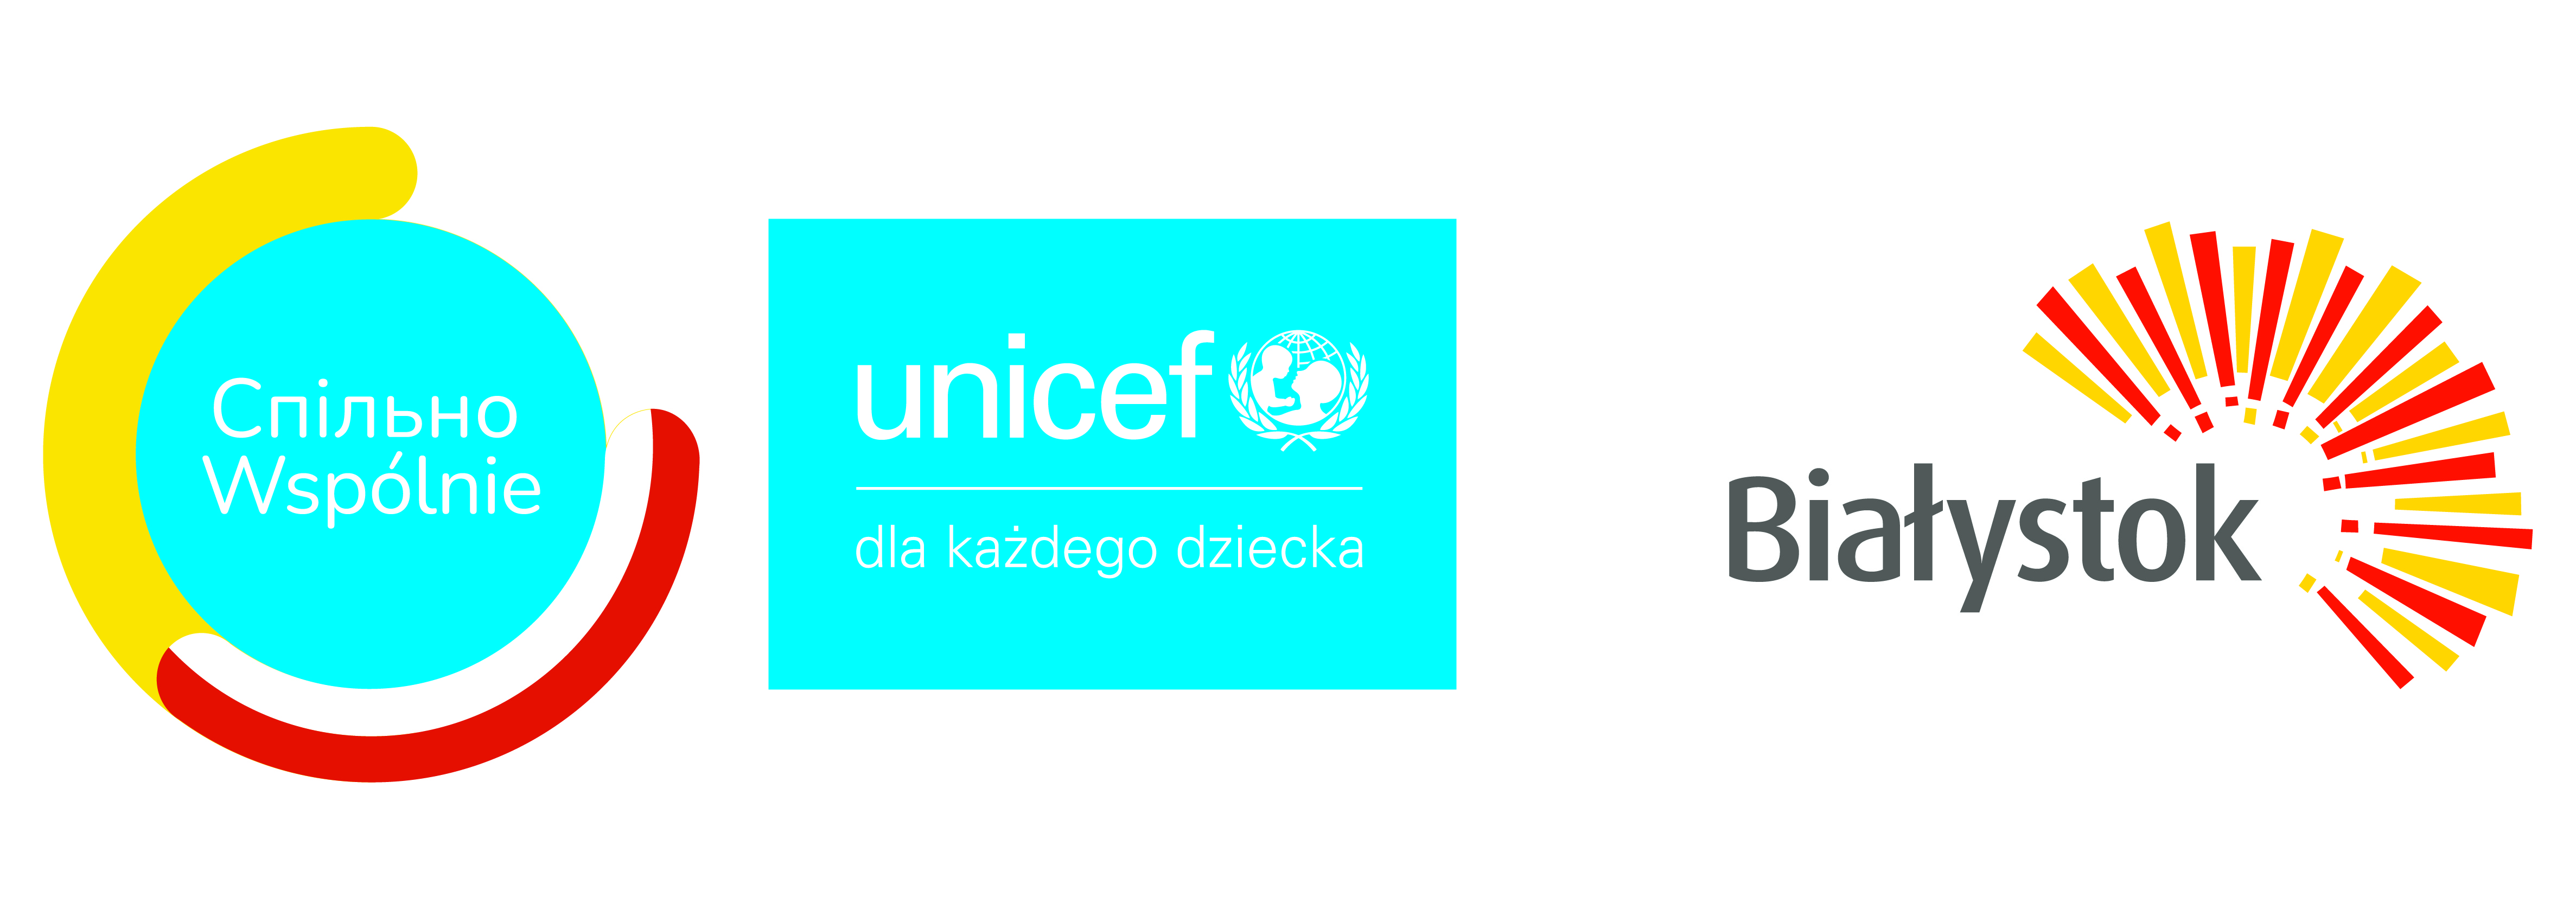 Nagłówe UNICEF.jpg